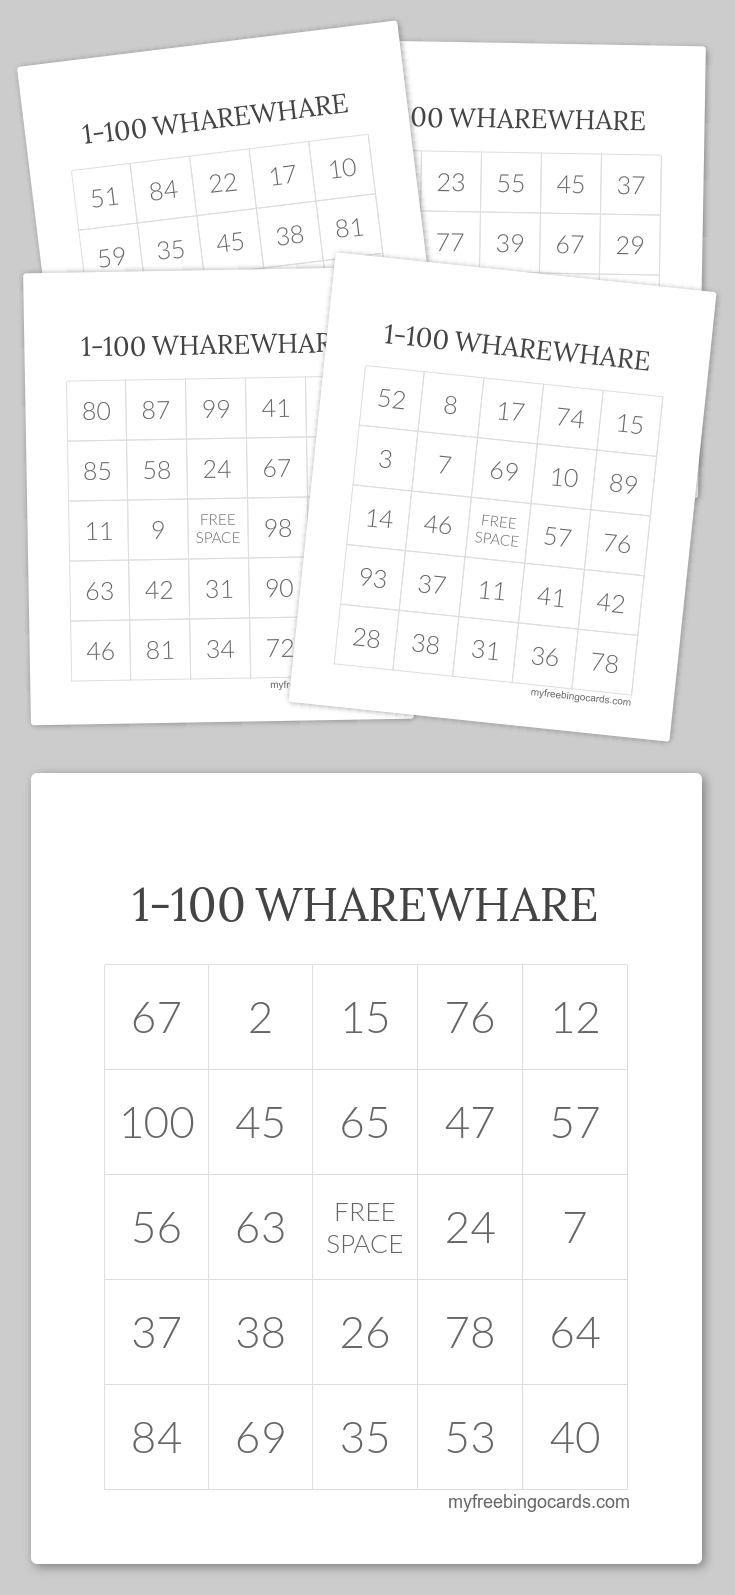 1-100 Wharewhare Bingo | Wharewhare 1-100 | Pinterest | Free - Free Printable Bingo Cards 1 100